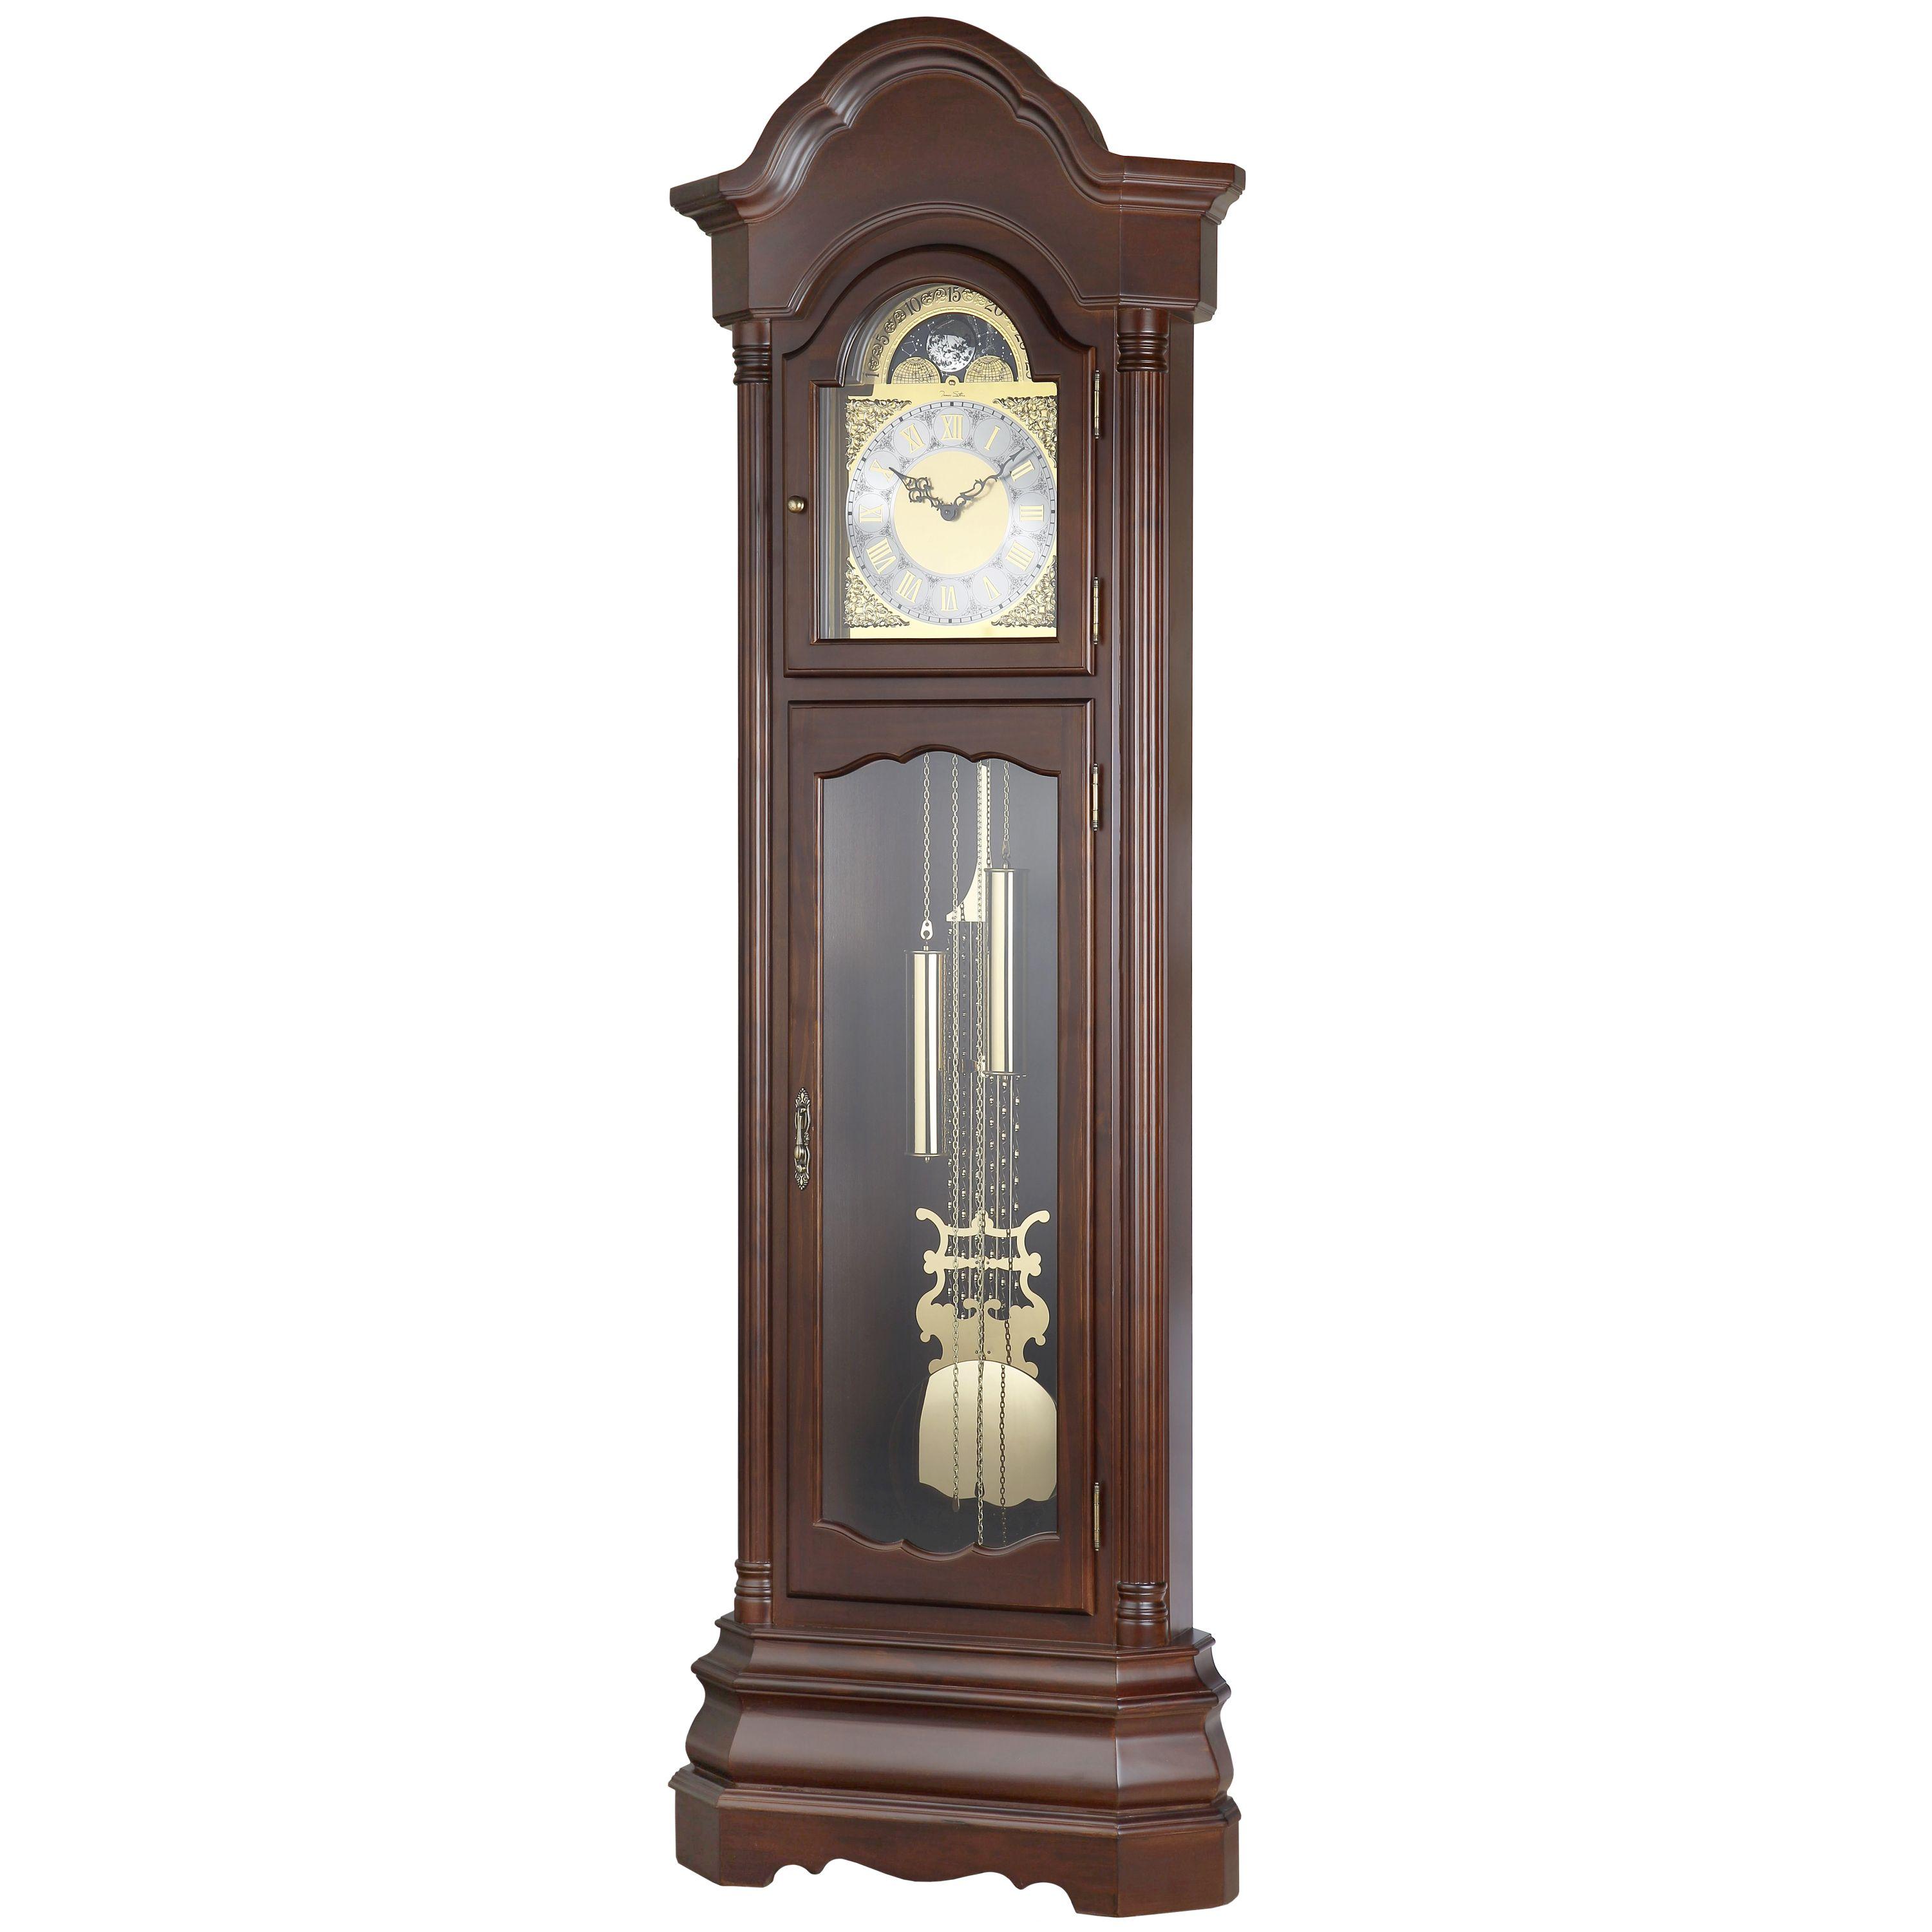 Часы напольные с маятником в деревянном корпусе. Напольные часы Aviere 01034n. Часы Ховард Миллер напольные. Напольные часы Aviere 01067n.